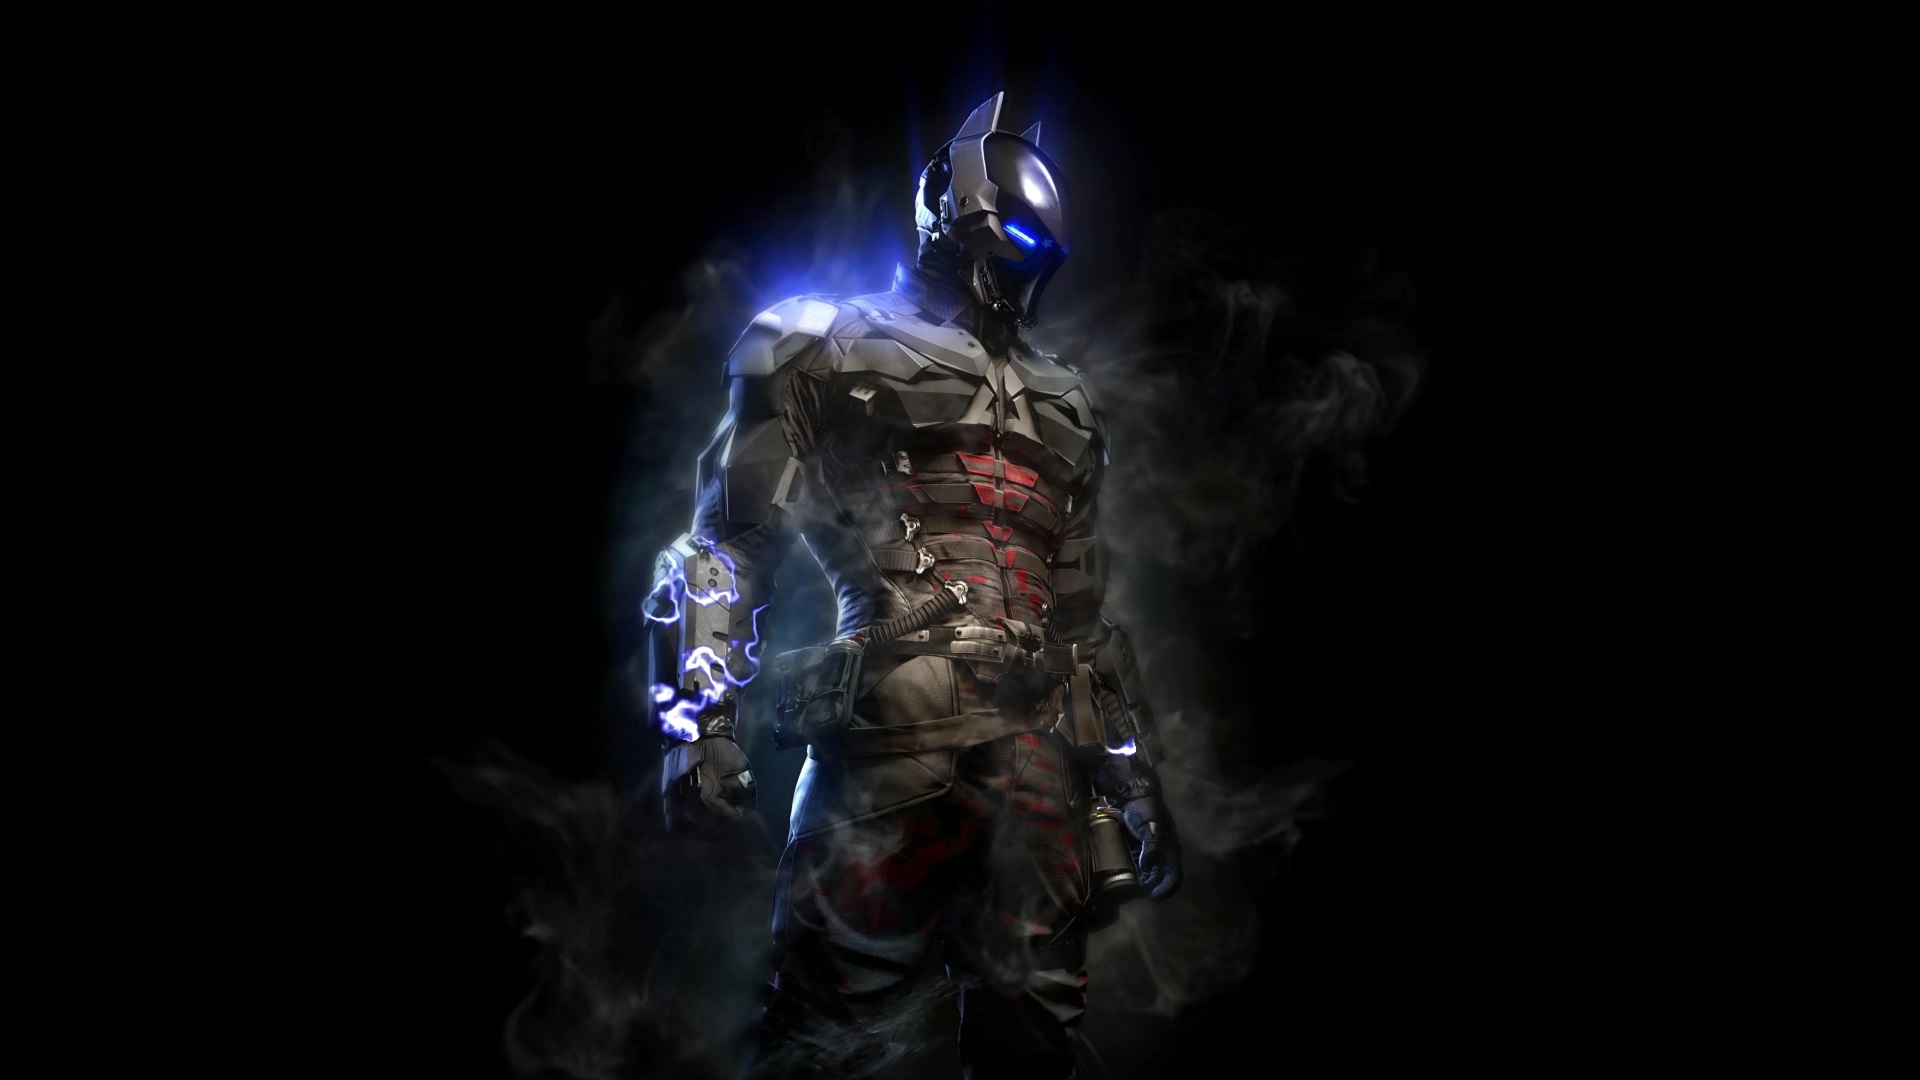 Aggregate Batman Arkham Knight Wallpaper Super Hot In Coedo Com Vn